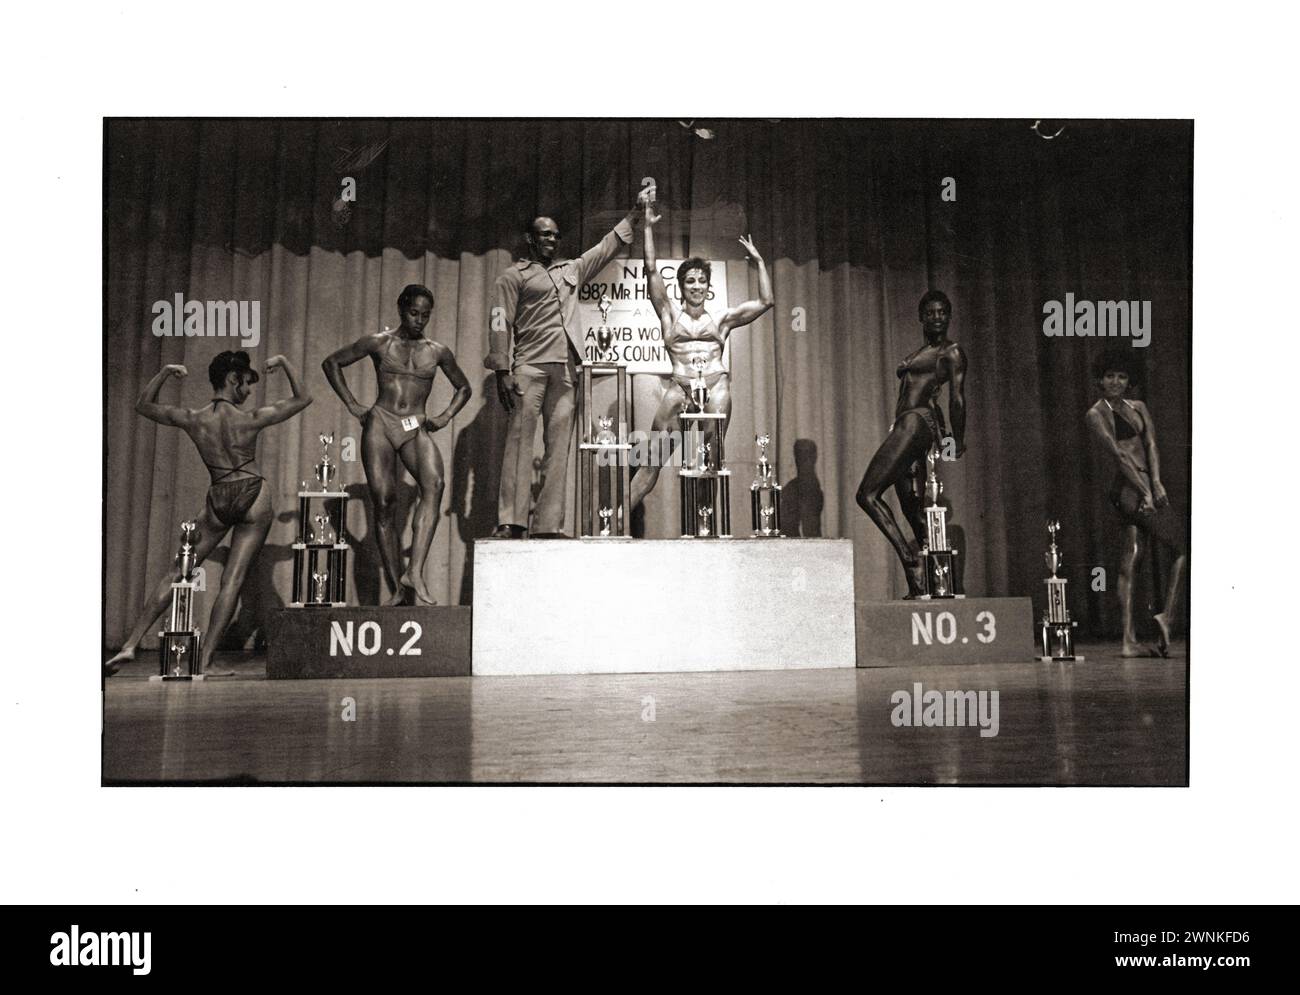 Vincitori e partecipanti al campionato femminile Kings County Open Body. A Brooklyn, New York nel 1982. Alla cerimonia di presentazione del trofeo. Foto Stock